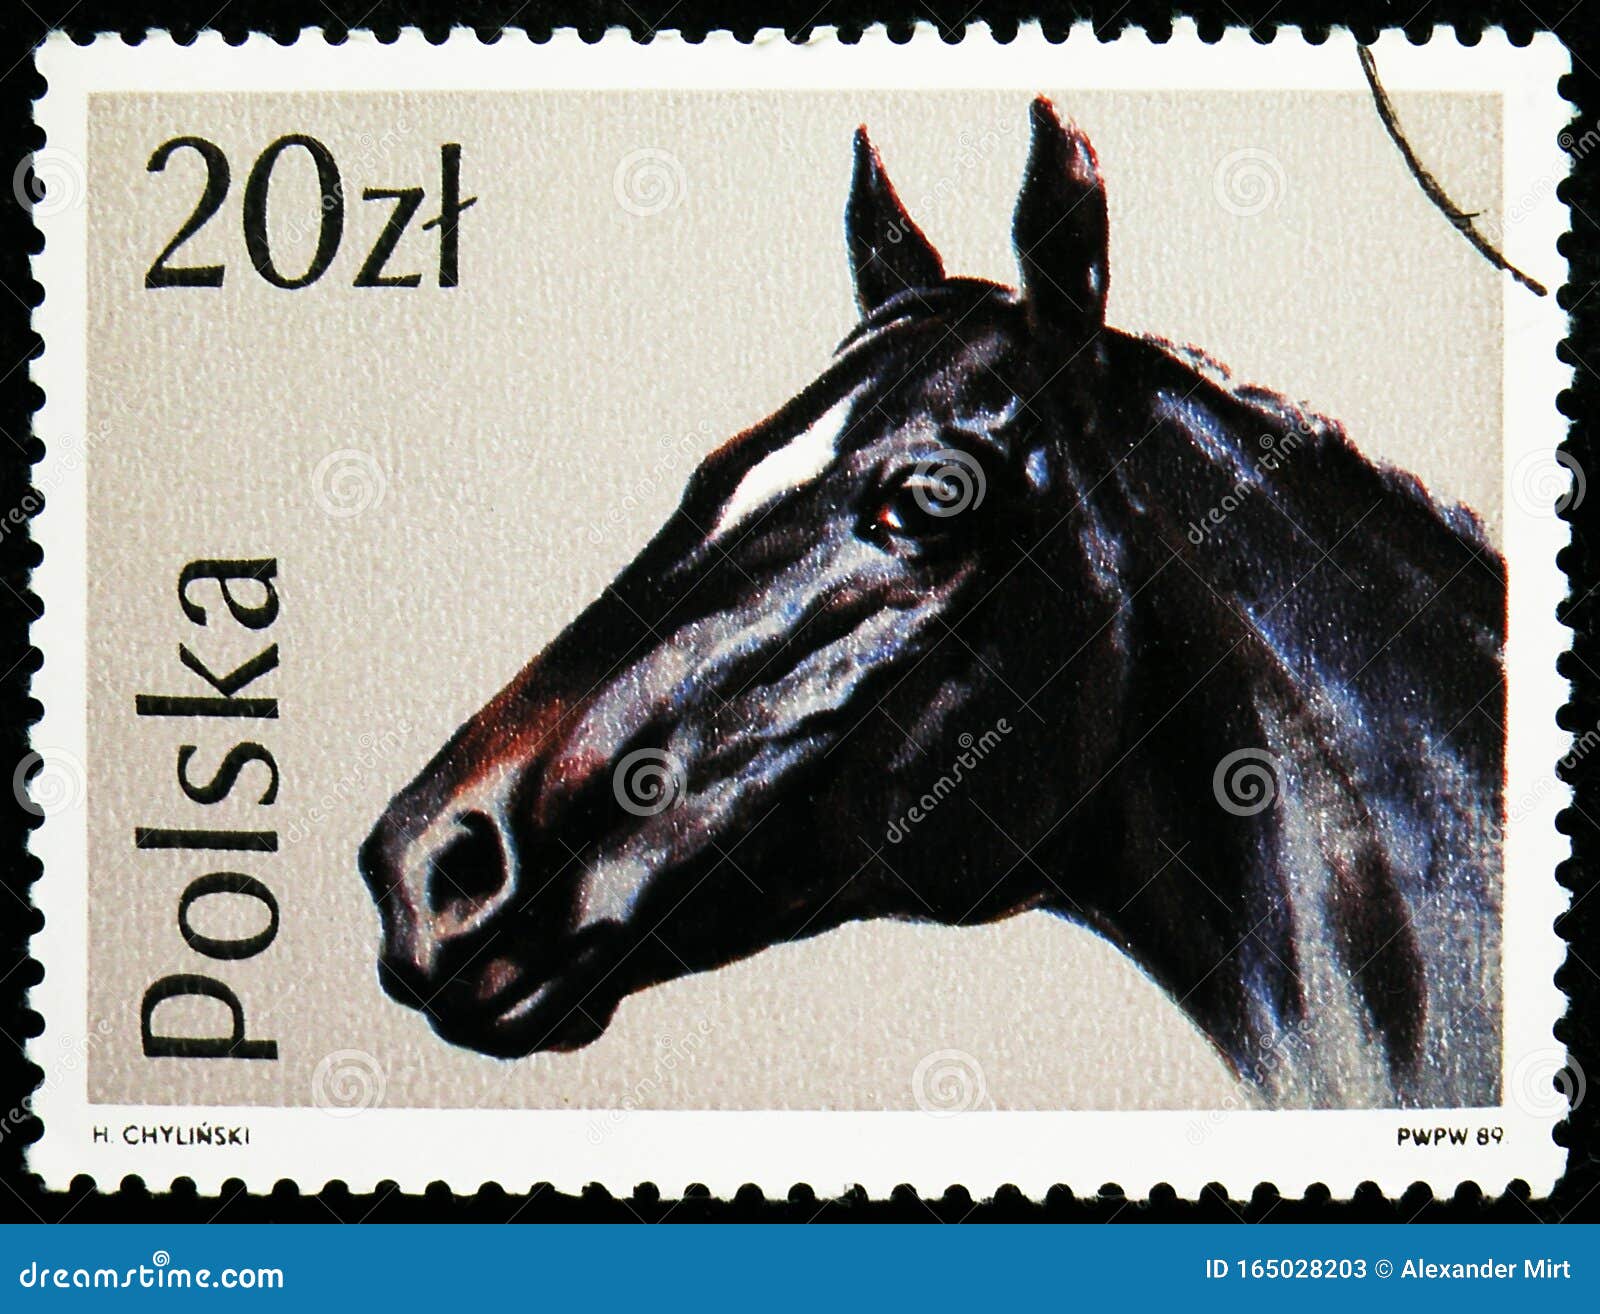 Briefmarken In Polen Zeigen Englisch Thoroughbred Equus Ferus Caballus Pferde Serie Ca 19 Redaktionelles Stockfoto Bild Von Englisch Historisch